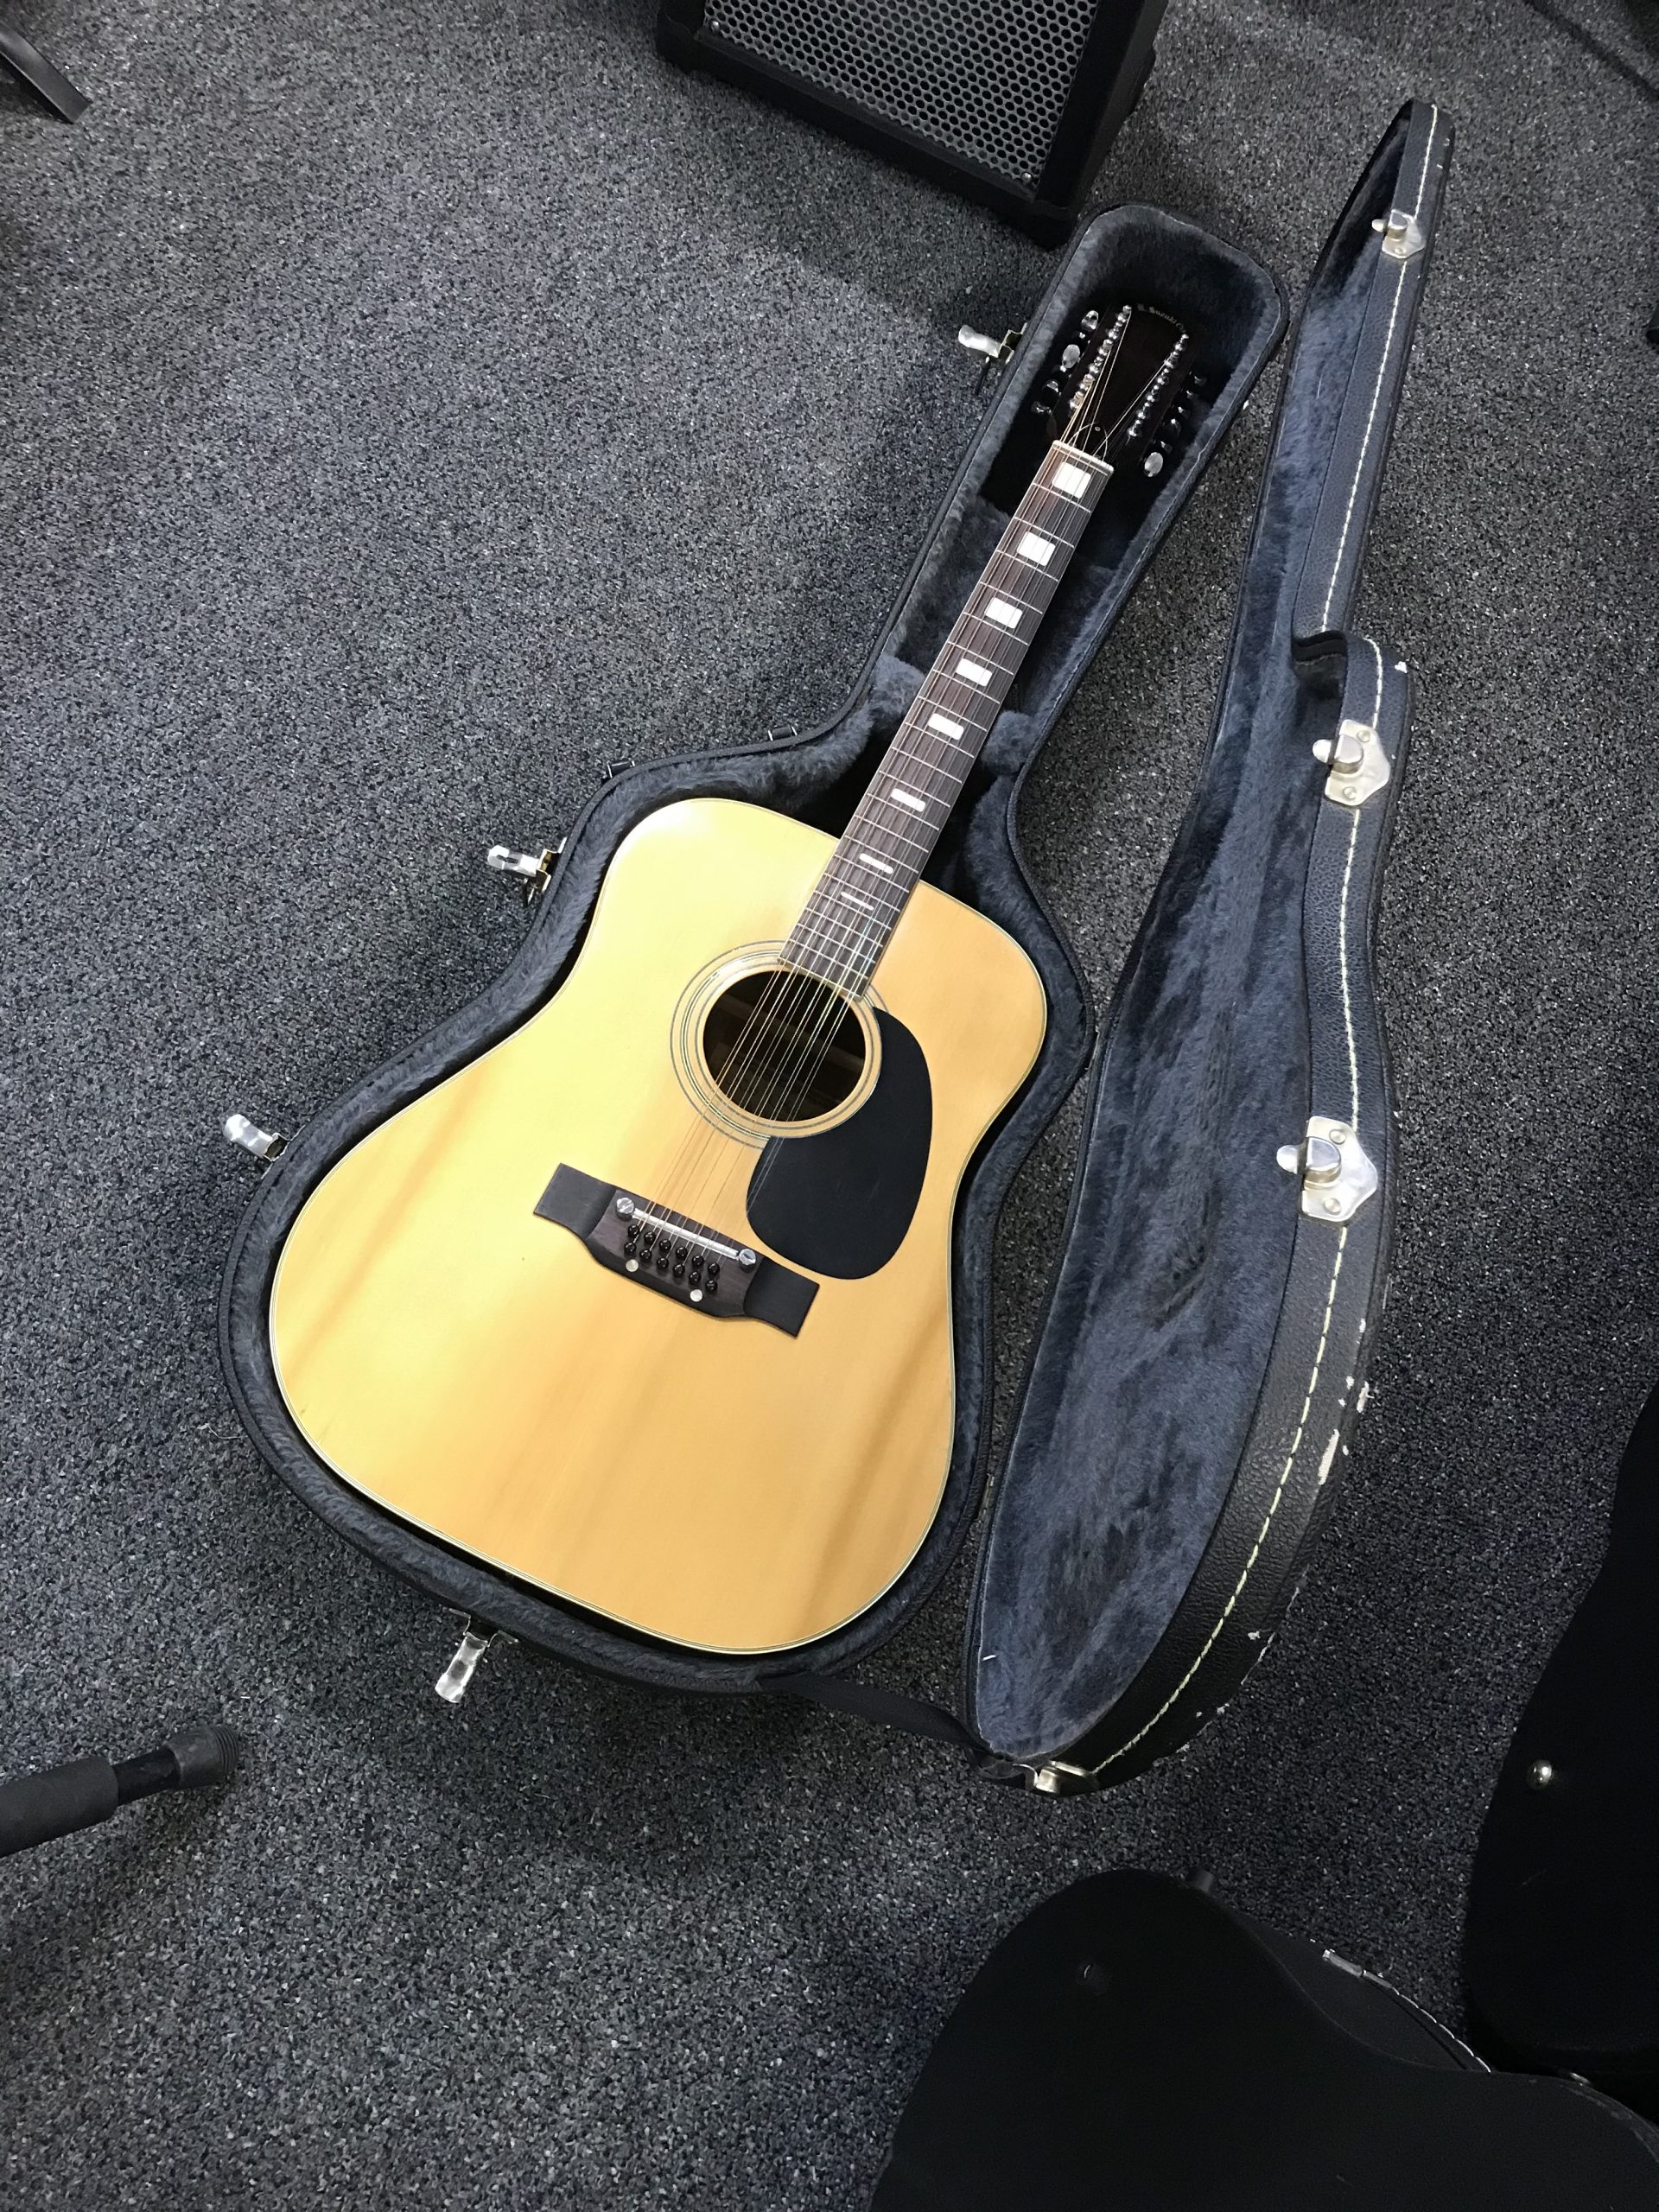 木曽鈴木w150アコースティックギター - 楽器/器材